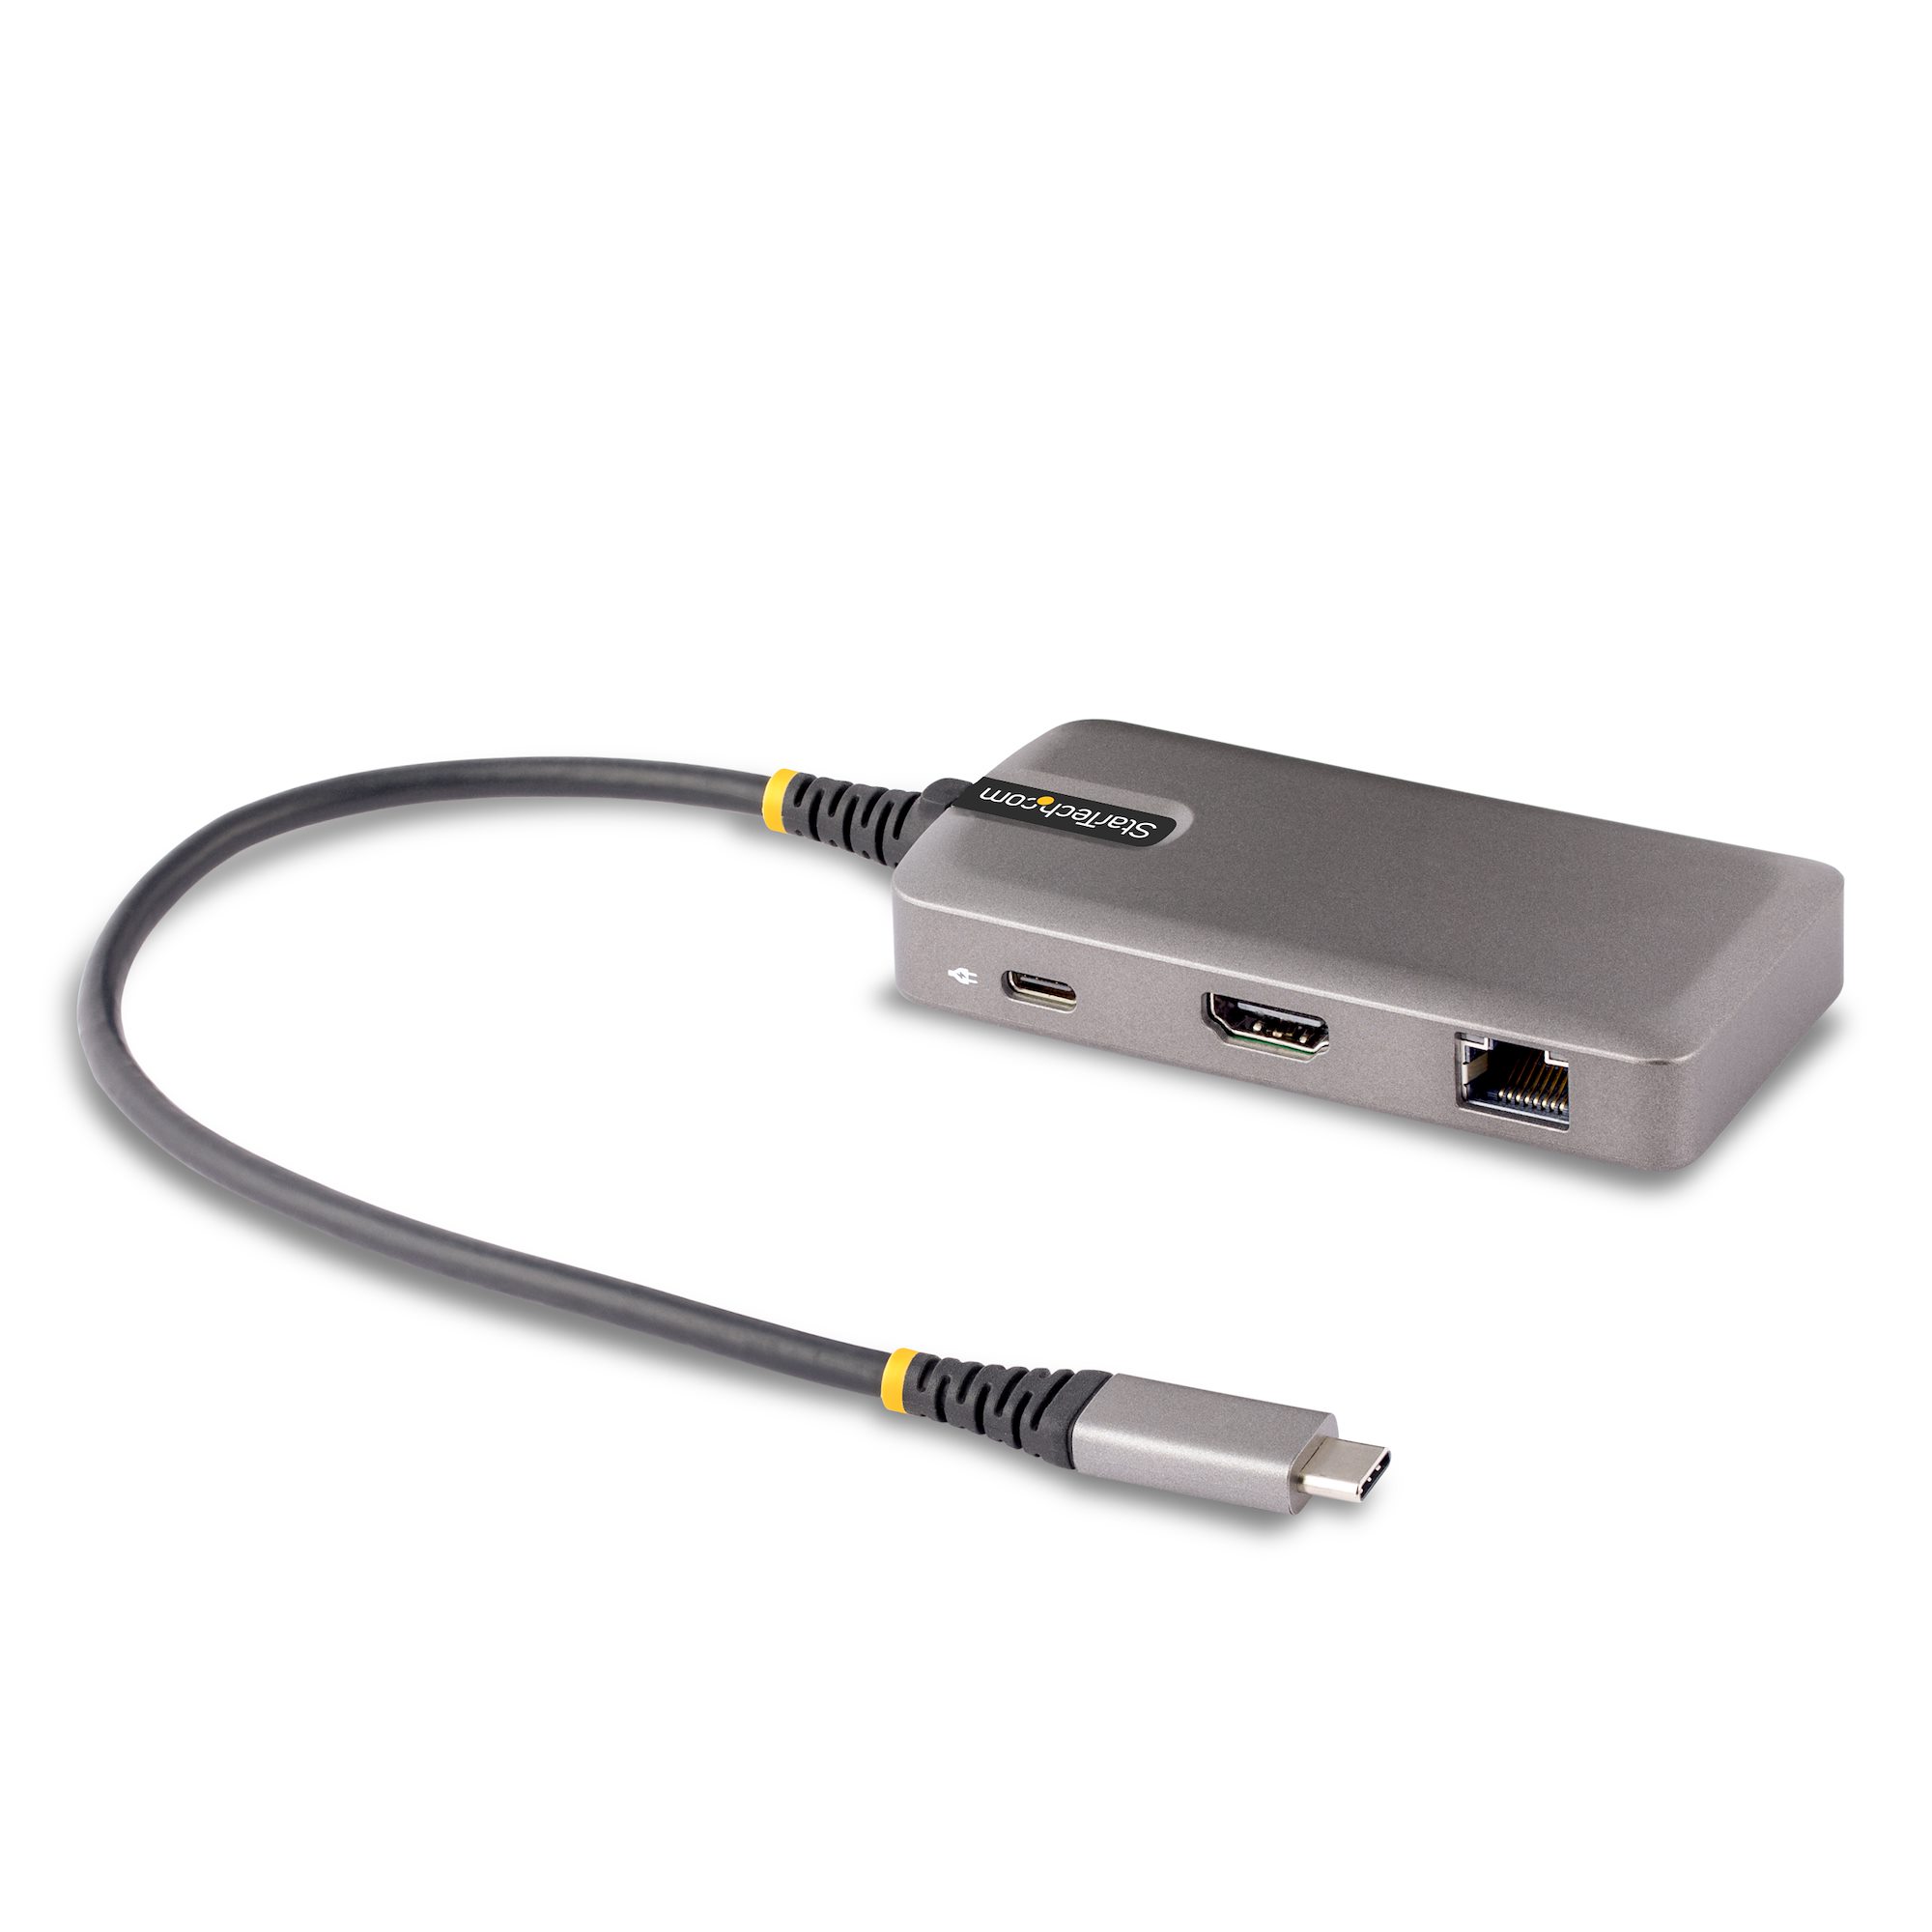 USB-C Multiport Adapter, HDMI, USB Hub USB-Cマルチポートアダプター 日本